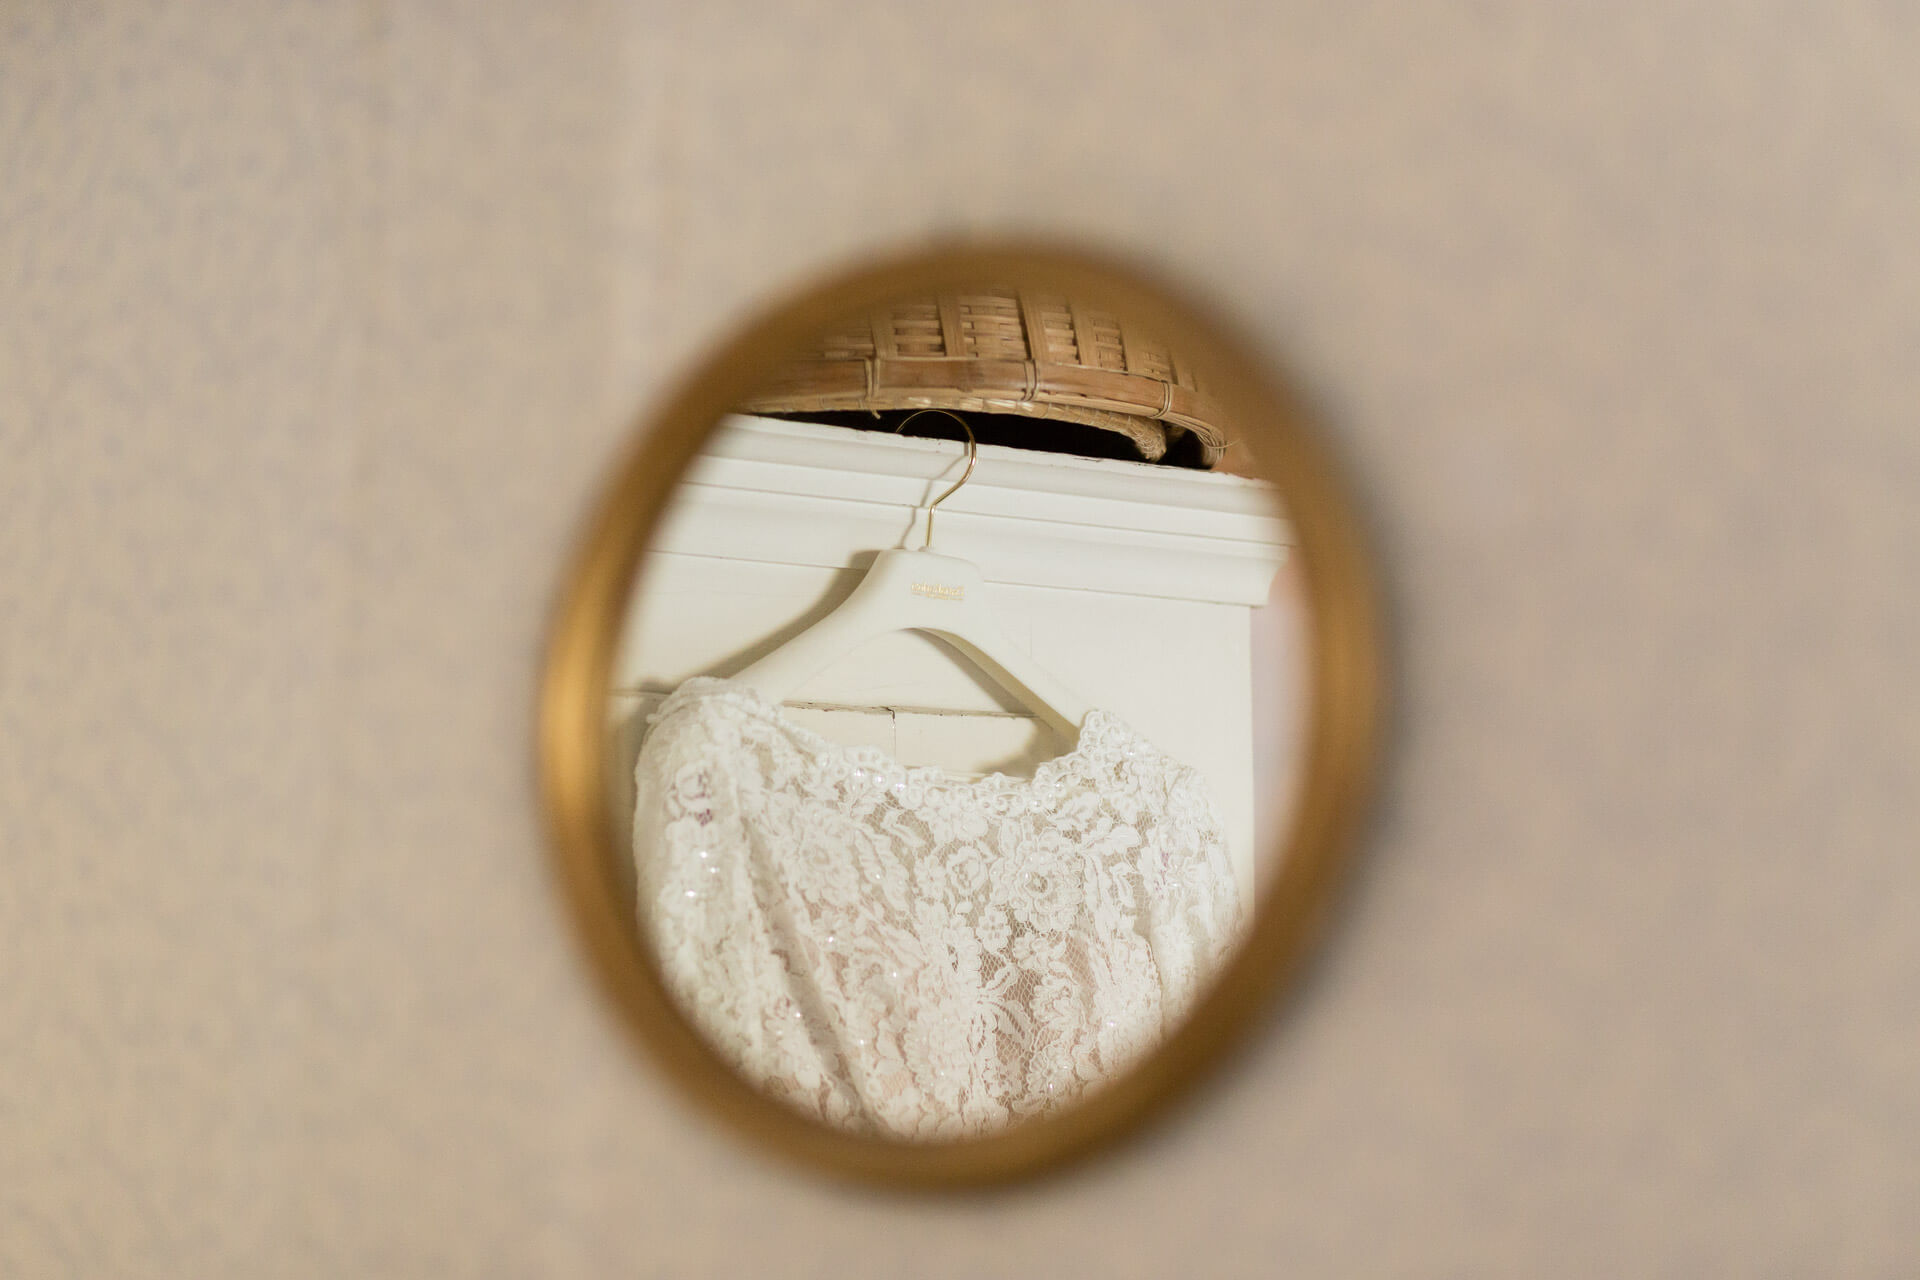 Brautkleidausschnitt ist im Spiegel zu sehen